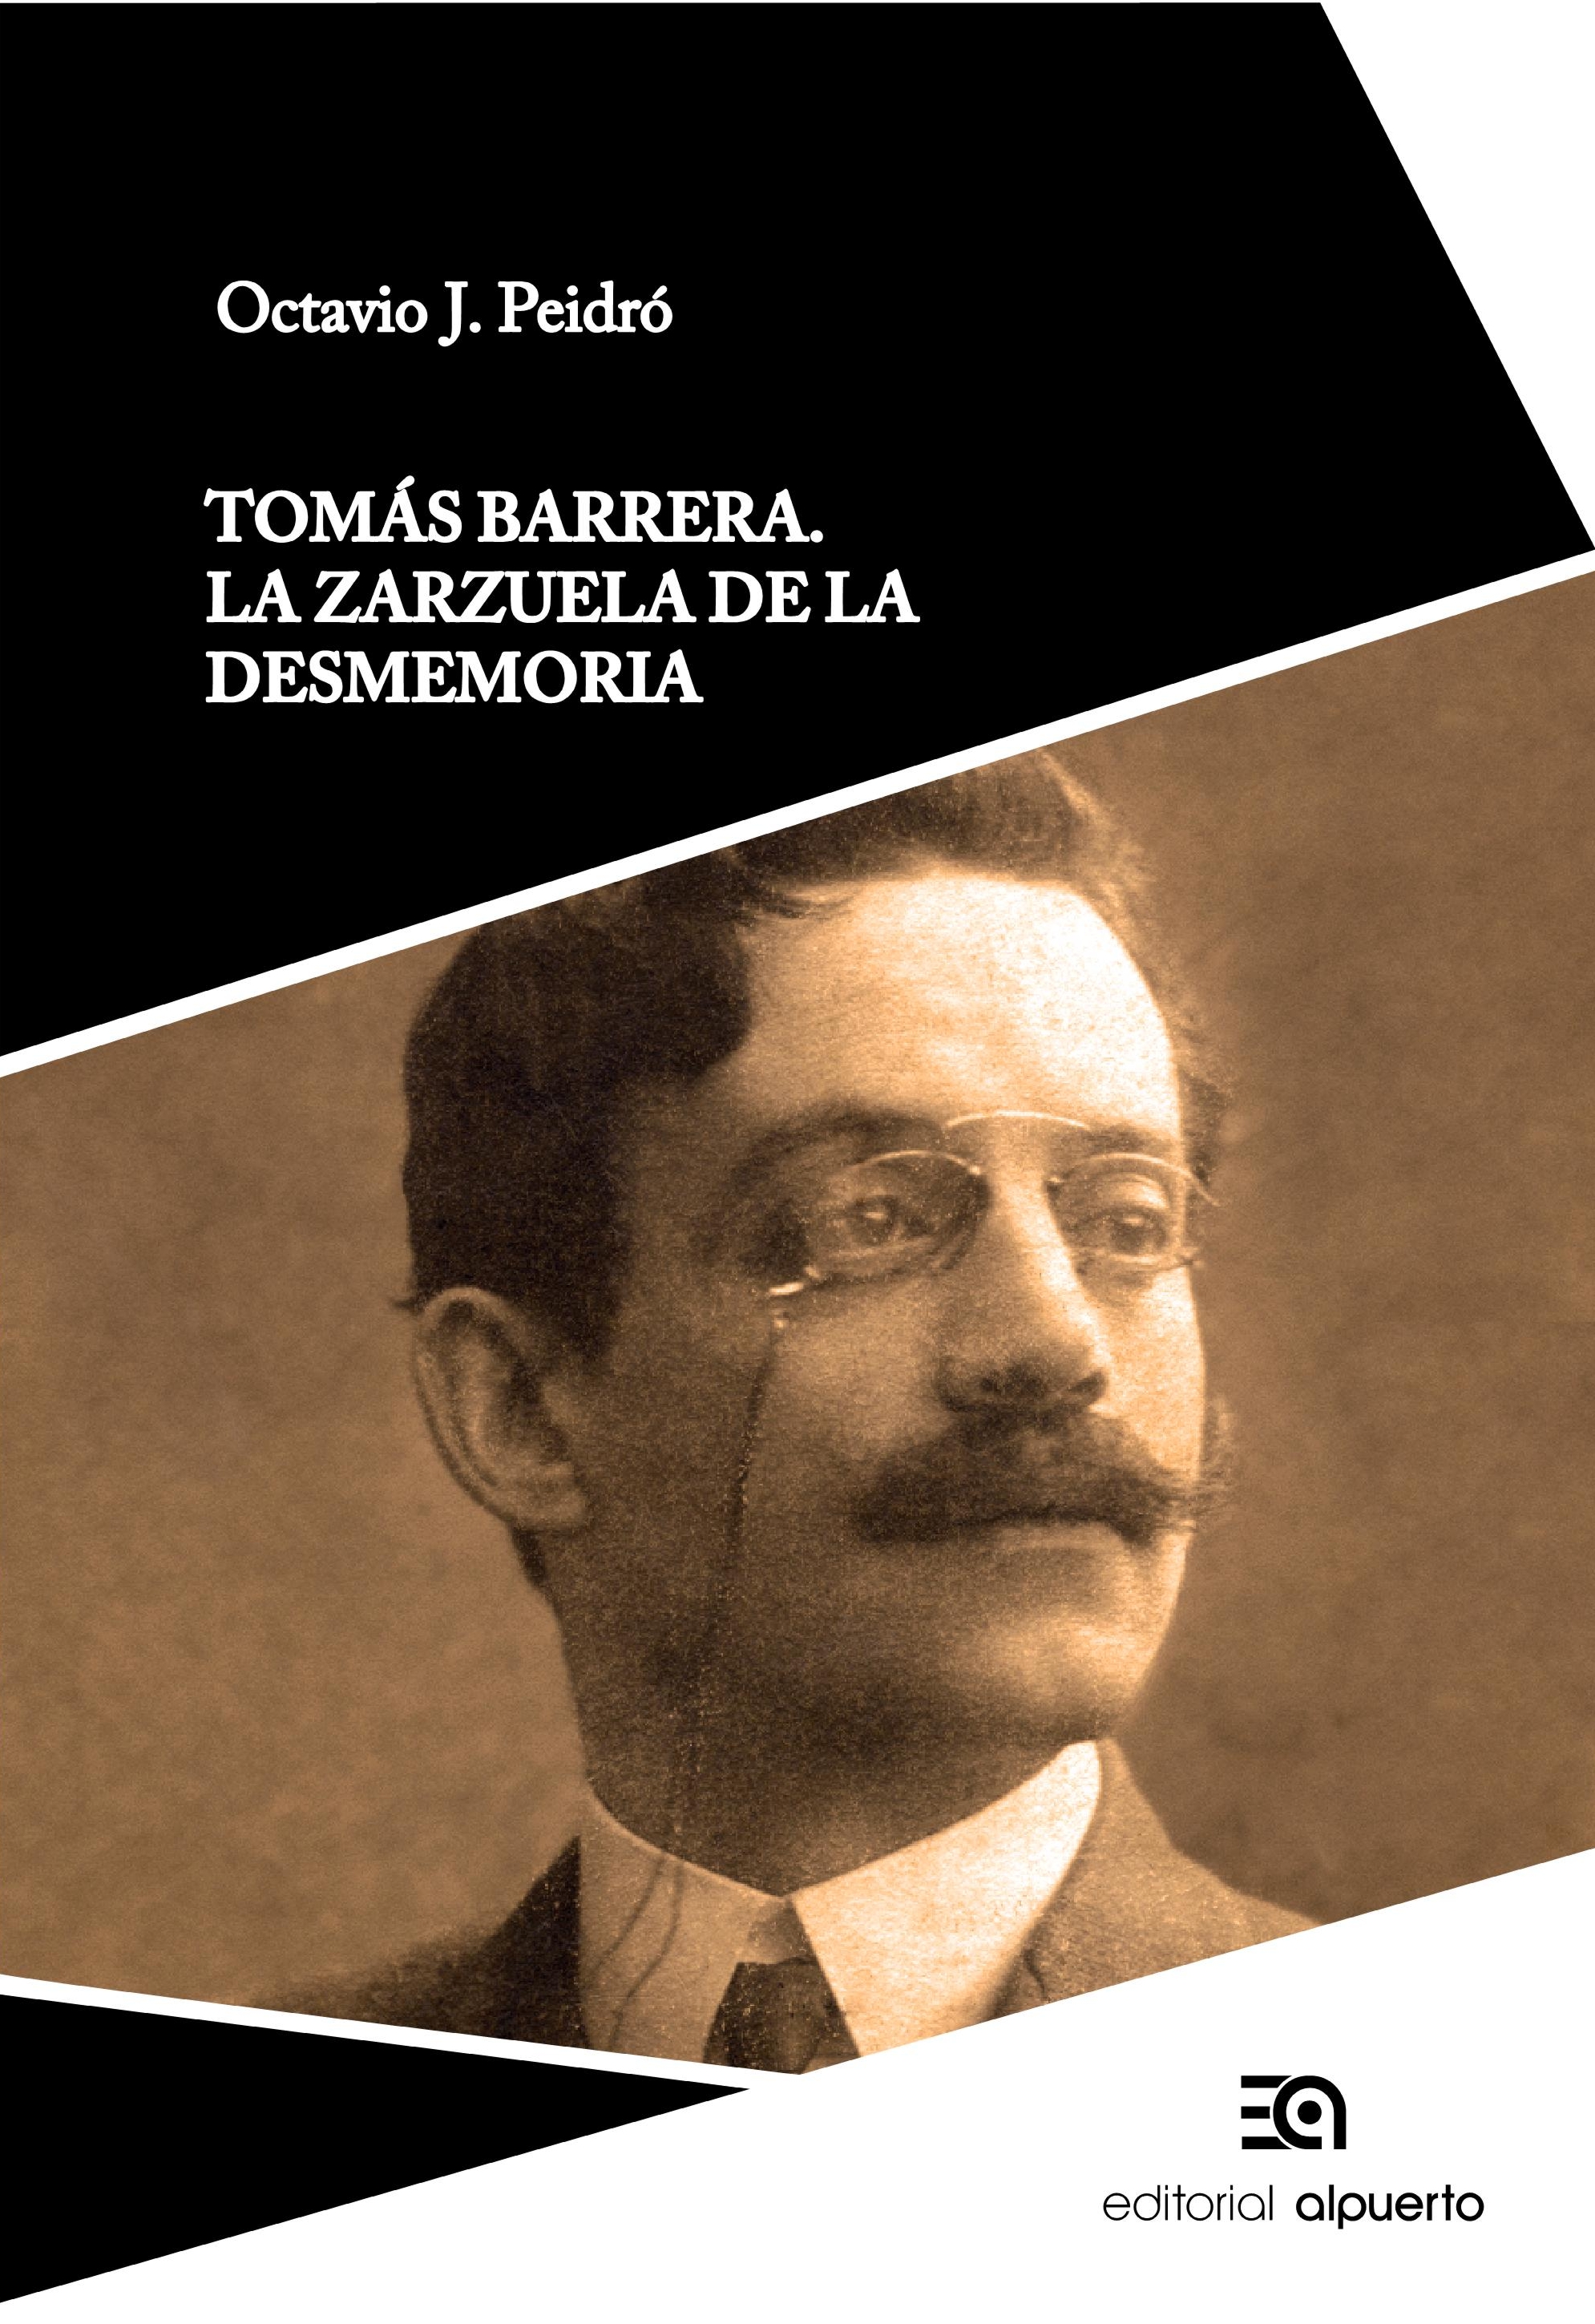 Tomás Barrera
La zarzuela de la desmemoria  